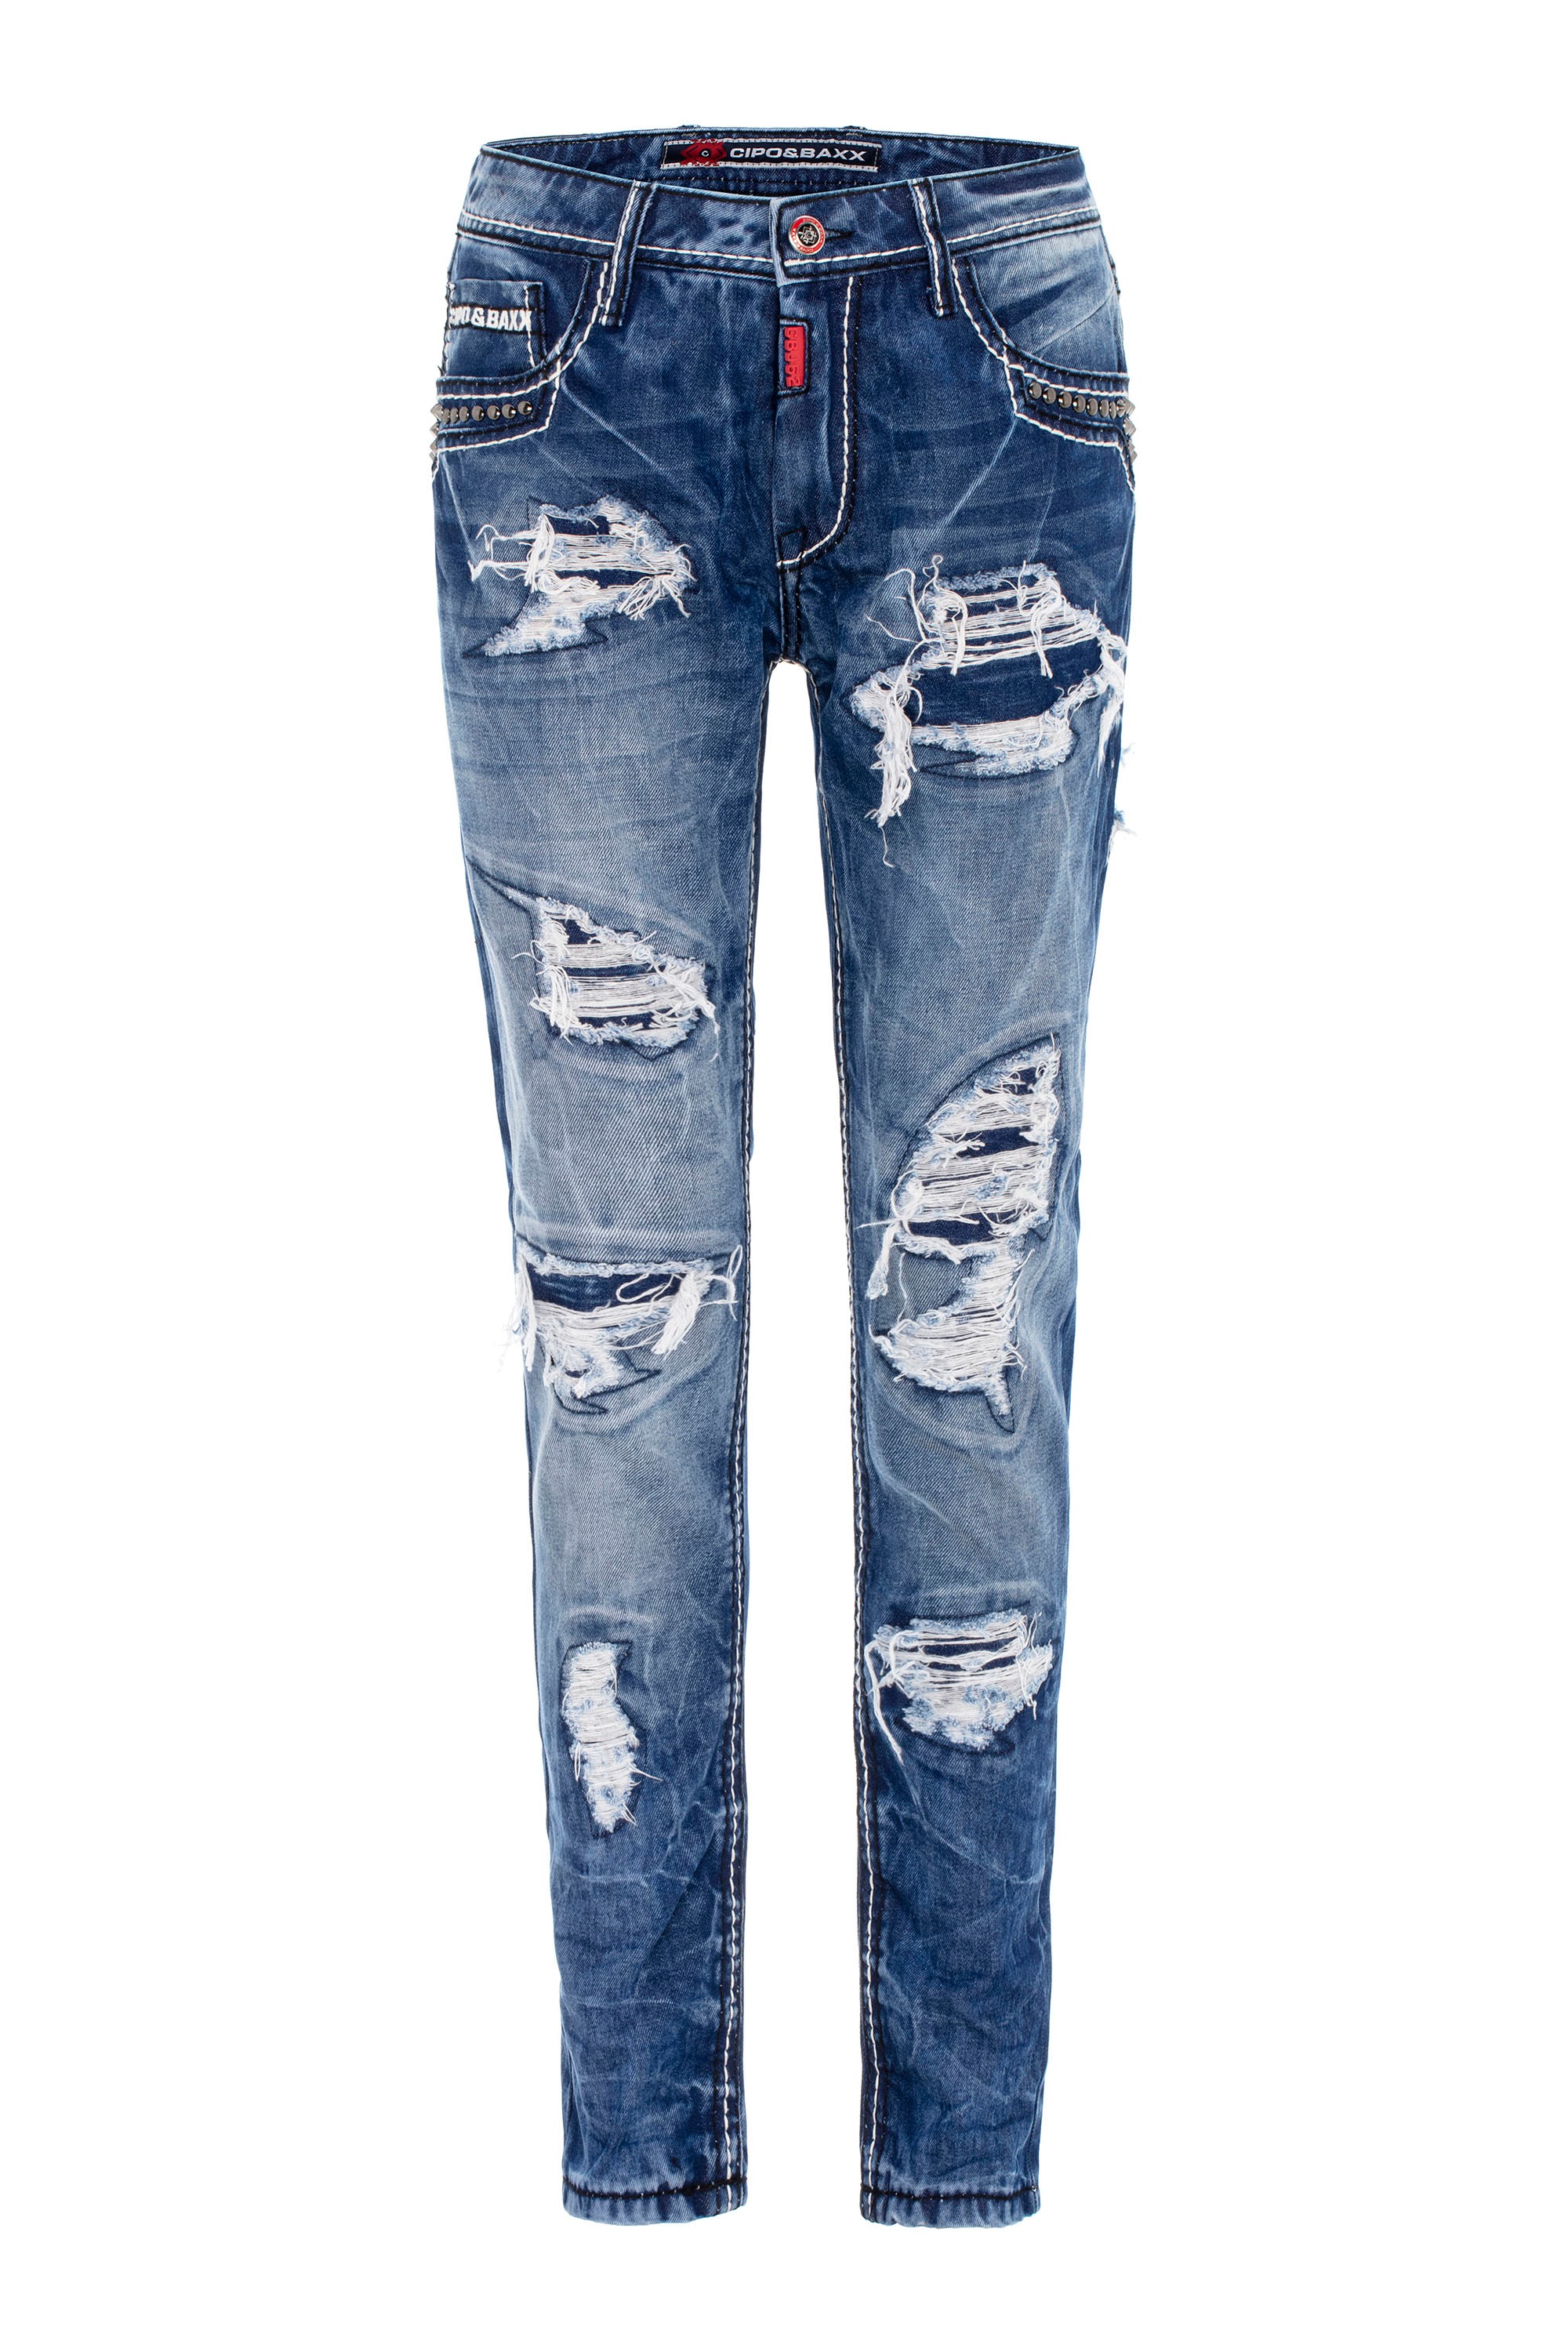 Cipo & Baxx Bequeme Jeans, im angesagten Destroyed-Look